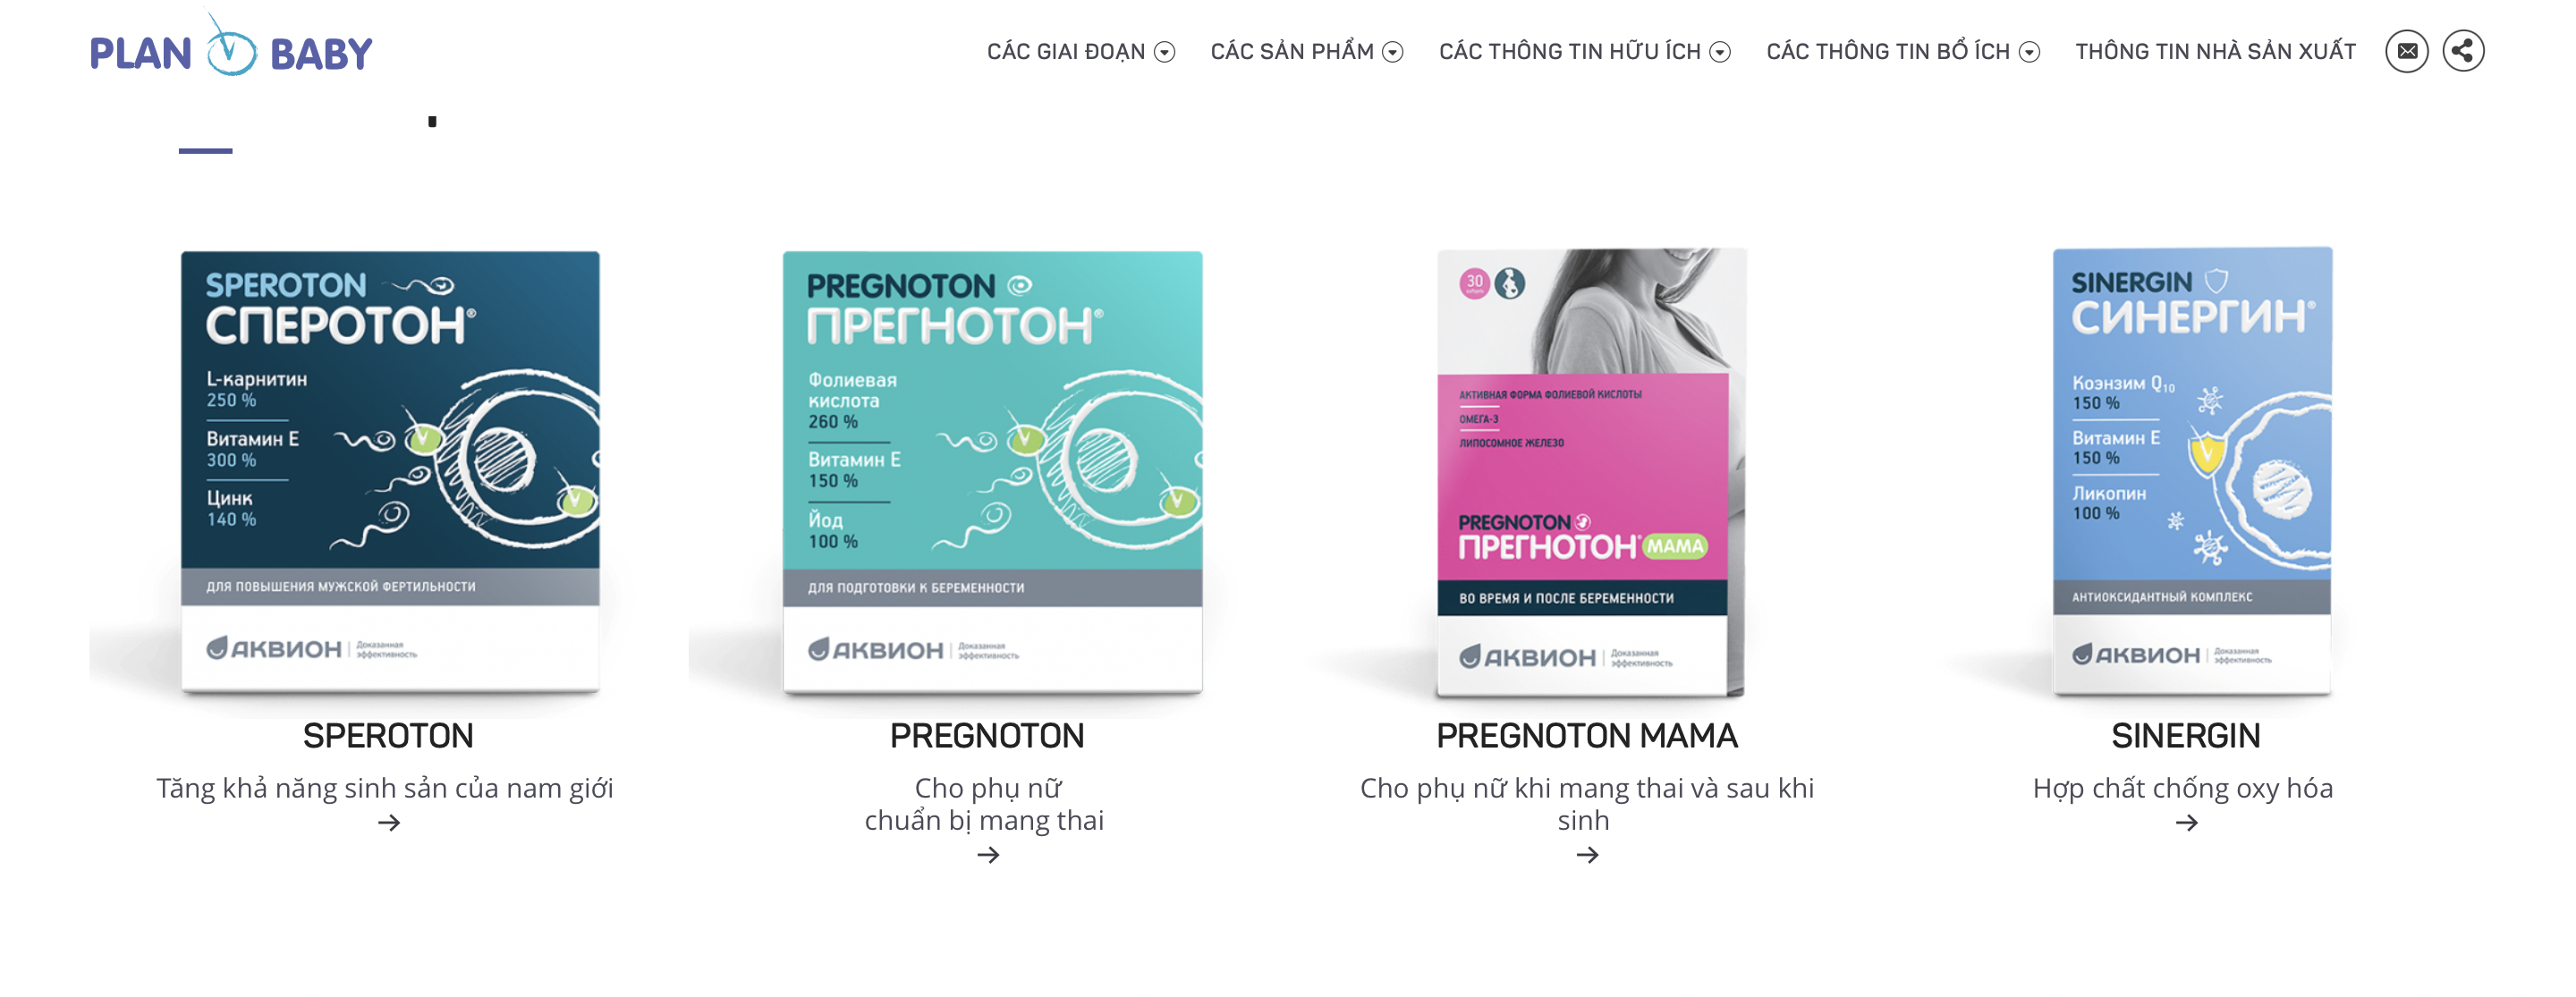 Компания «Аквион» запустила во Вьетнаме портал с препаратами для репродуктивного здоровья